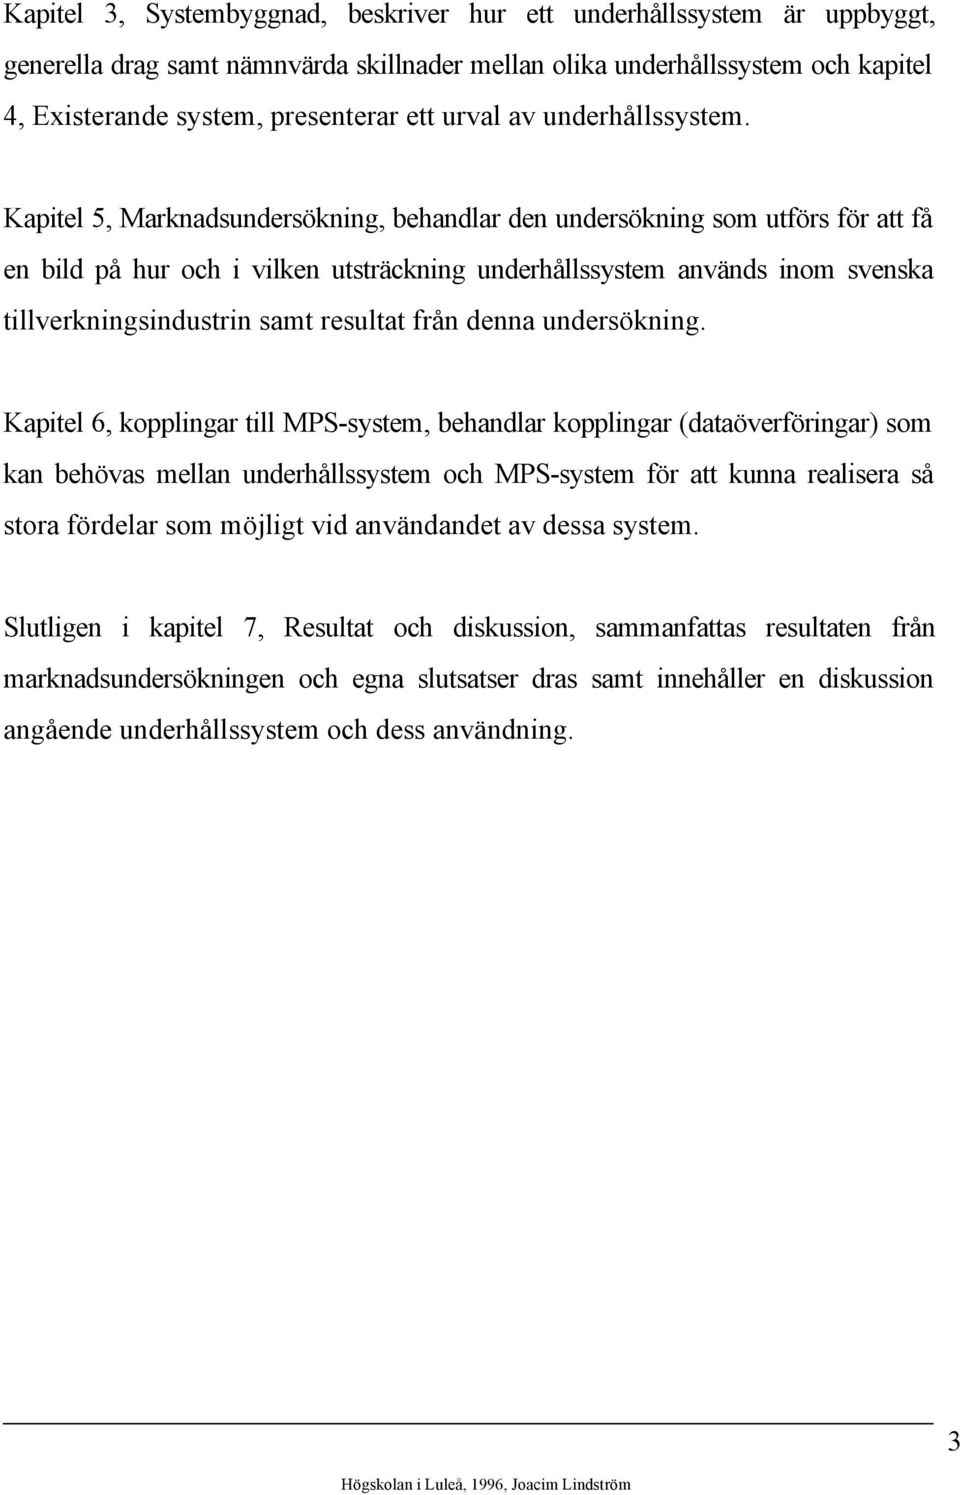 Kapitel 5, Marknadsundersökning, behandlar den undersökning som utförs för att få en bild på hur och i vilken utsträckning underhållssystem används inom svenska tillverkningsindustrin samt resultat